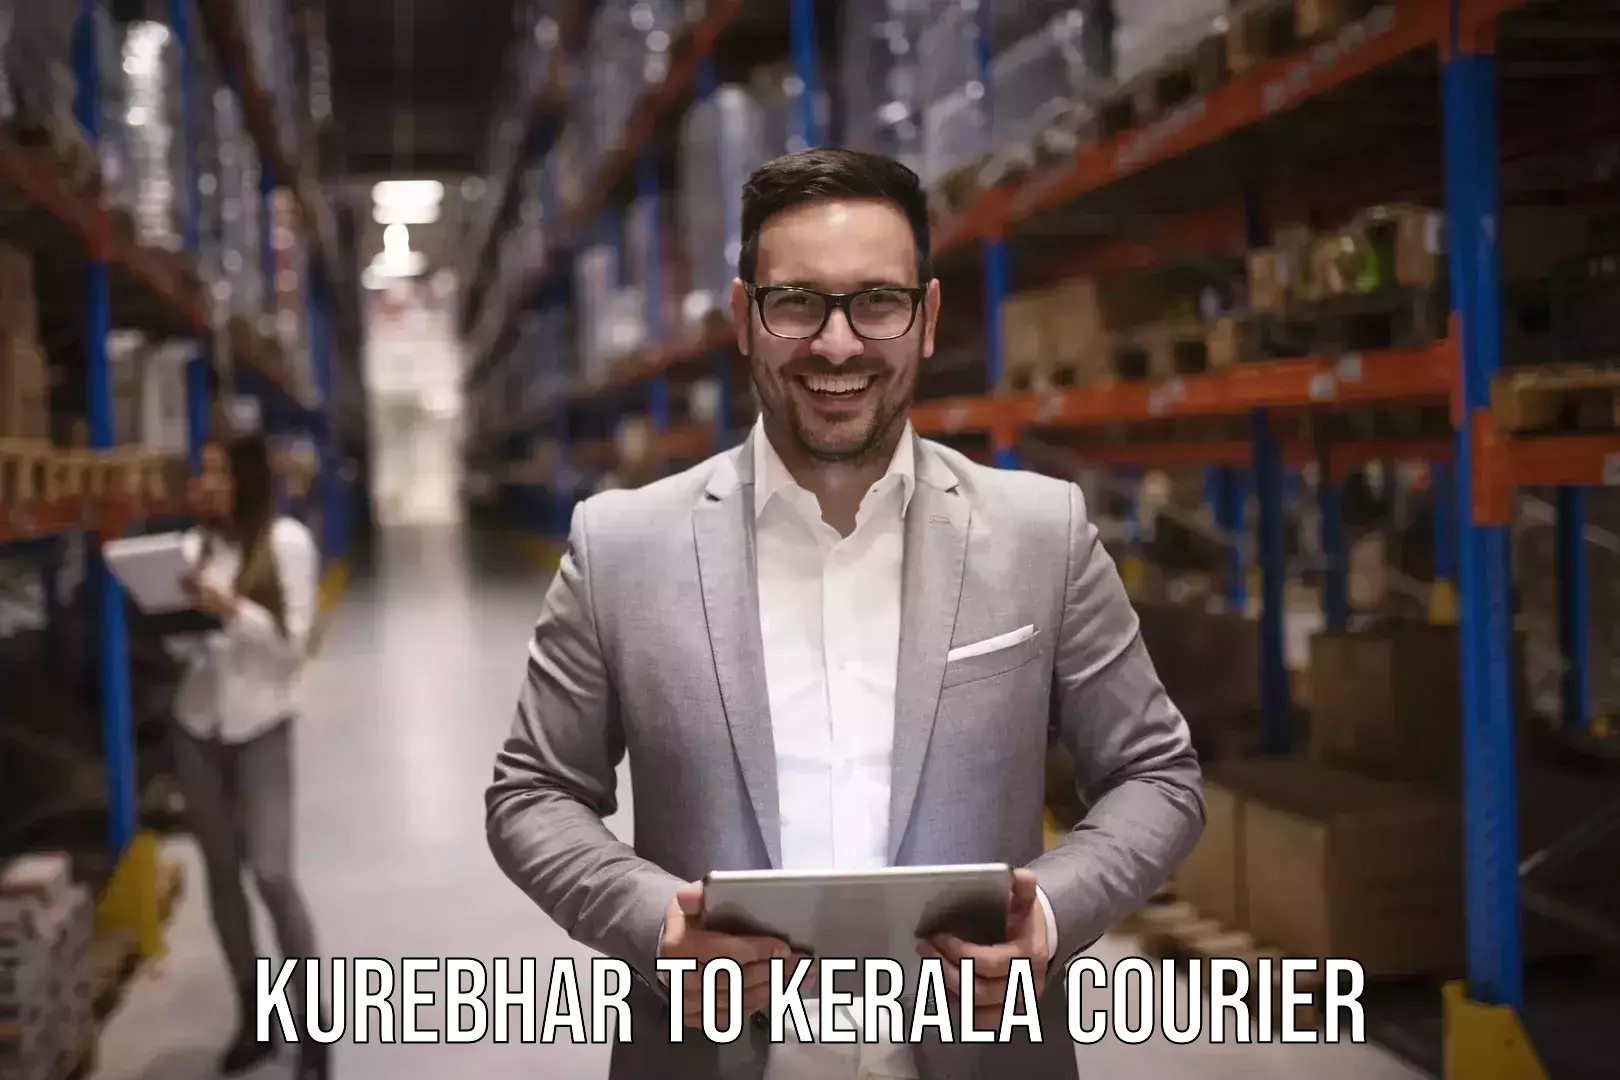 Baggage transport network Kurebhar to Kerala